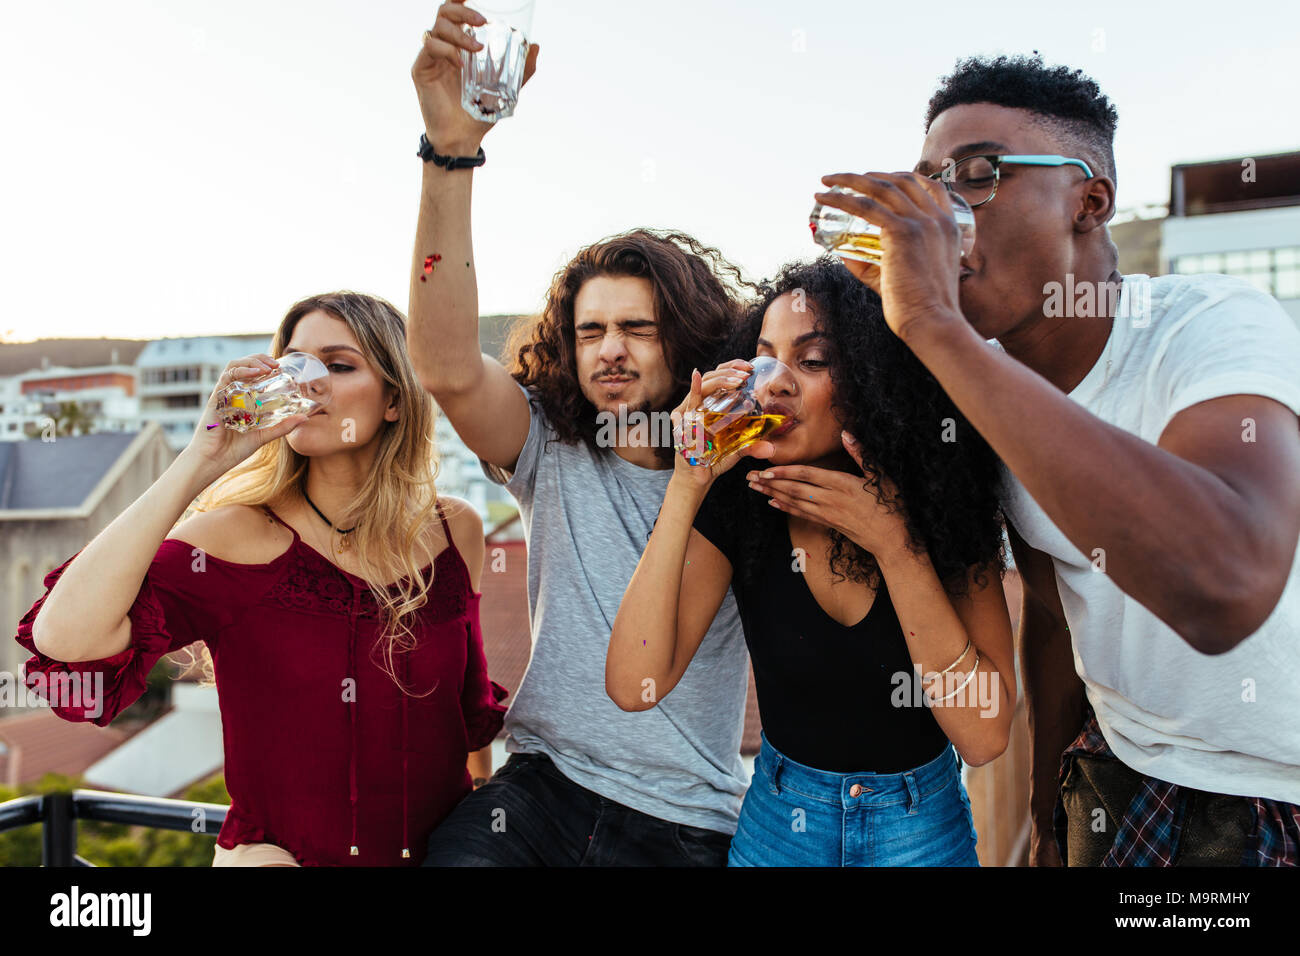 Groupe de jeunes amis de boire et de profiter d'une soirée sur le toit. Hommes et femmes multiraciales drinking at rooftop party. Banque D'Images